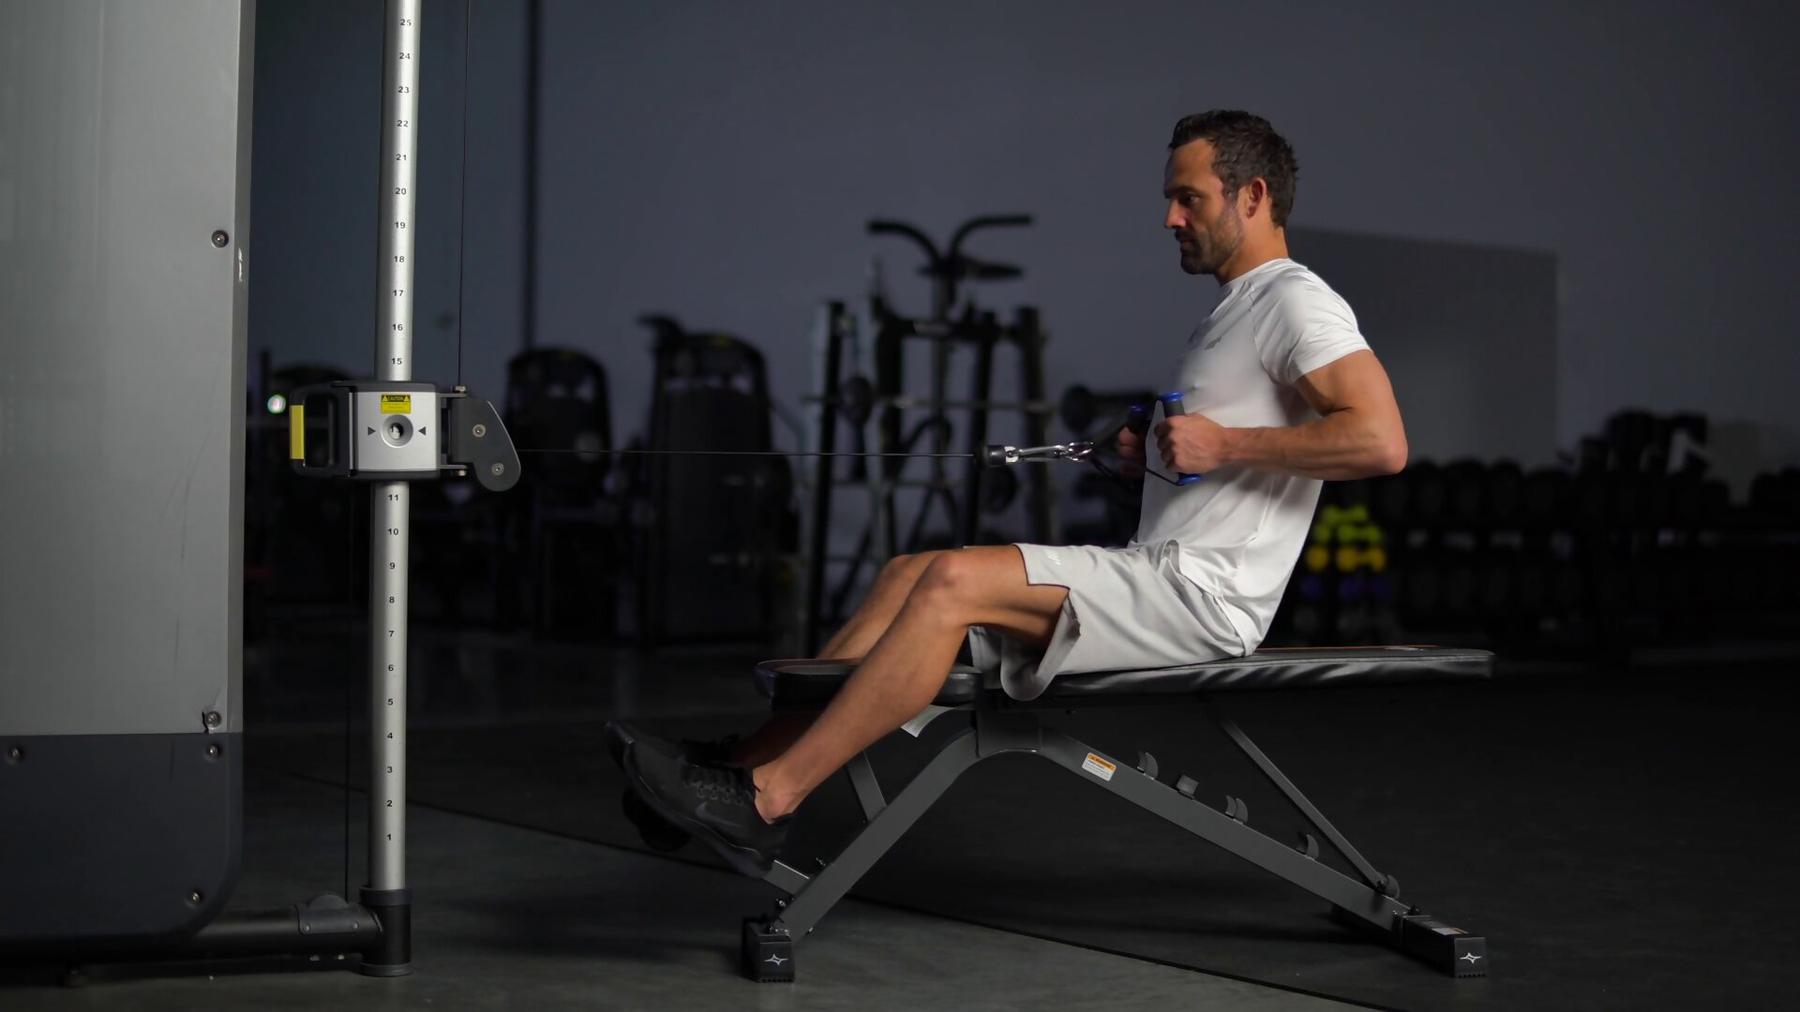 Máquina de Polea del Gym: 5 Razones Para Incluirla en tus rutinas